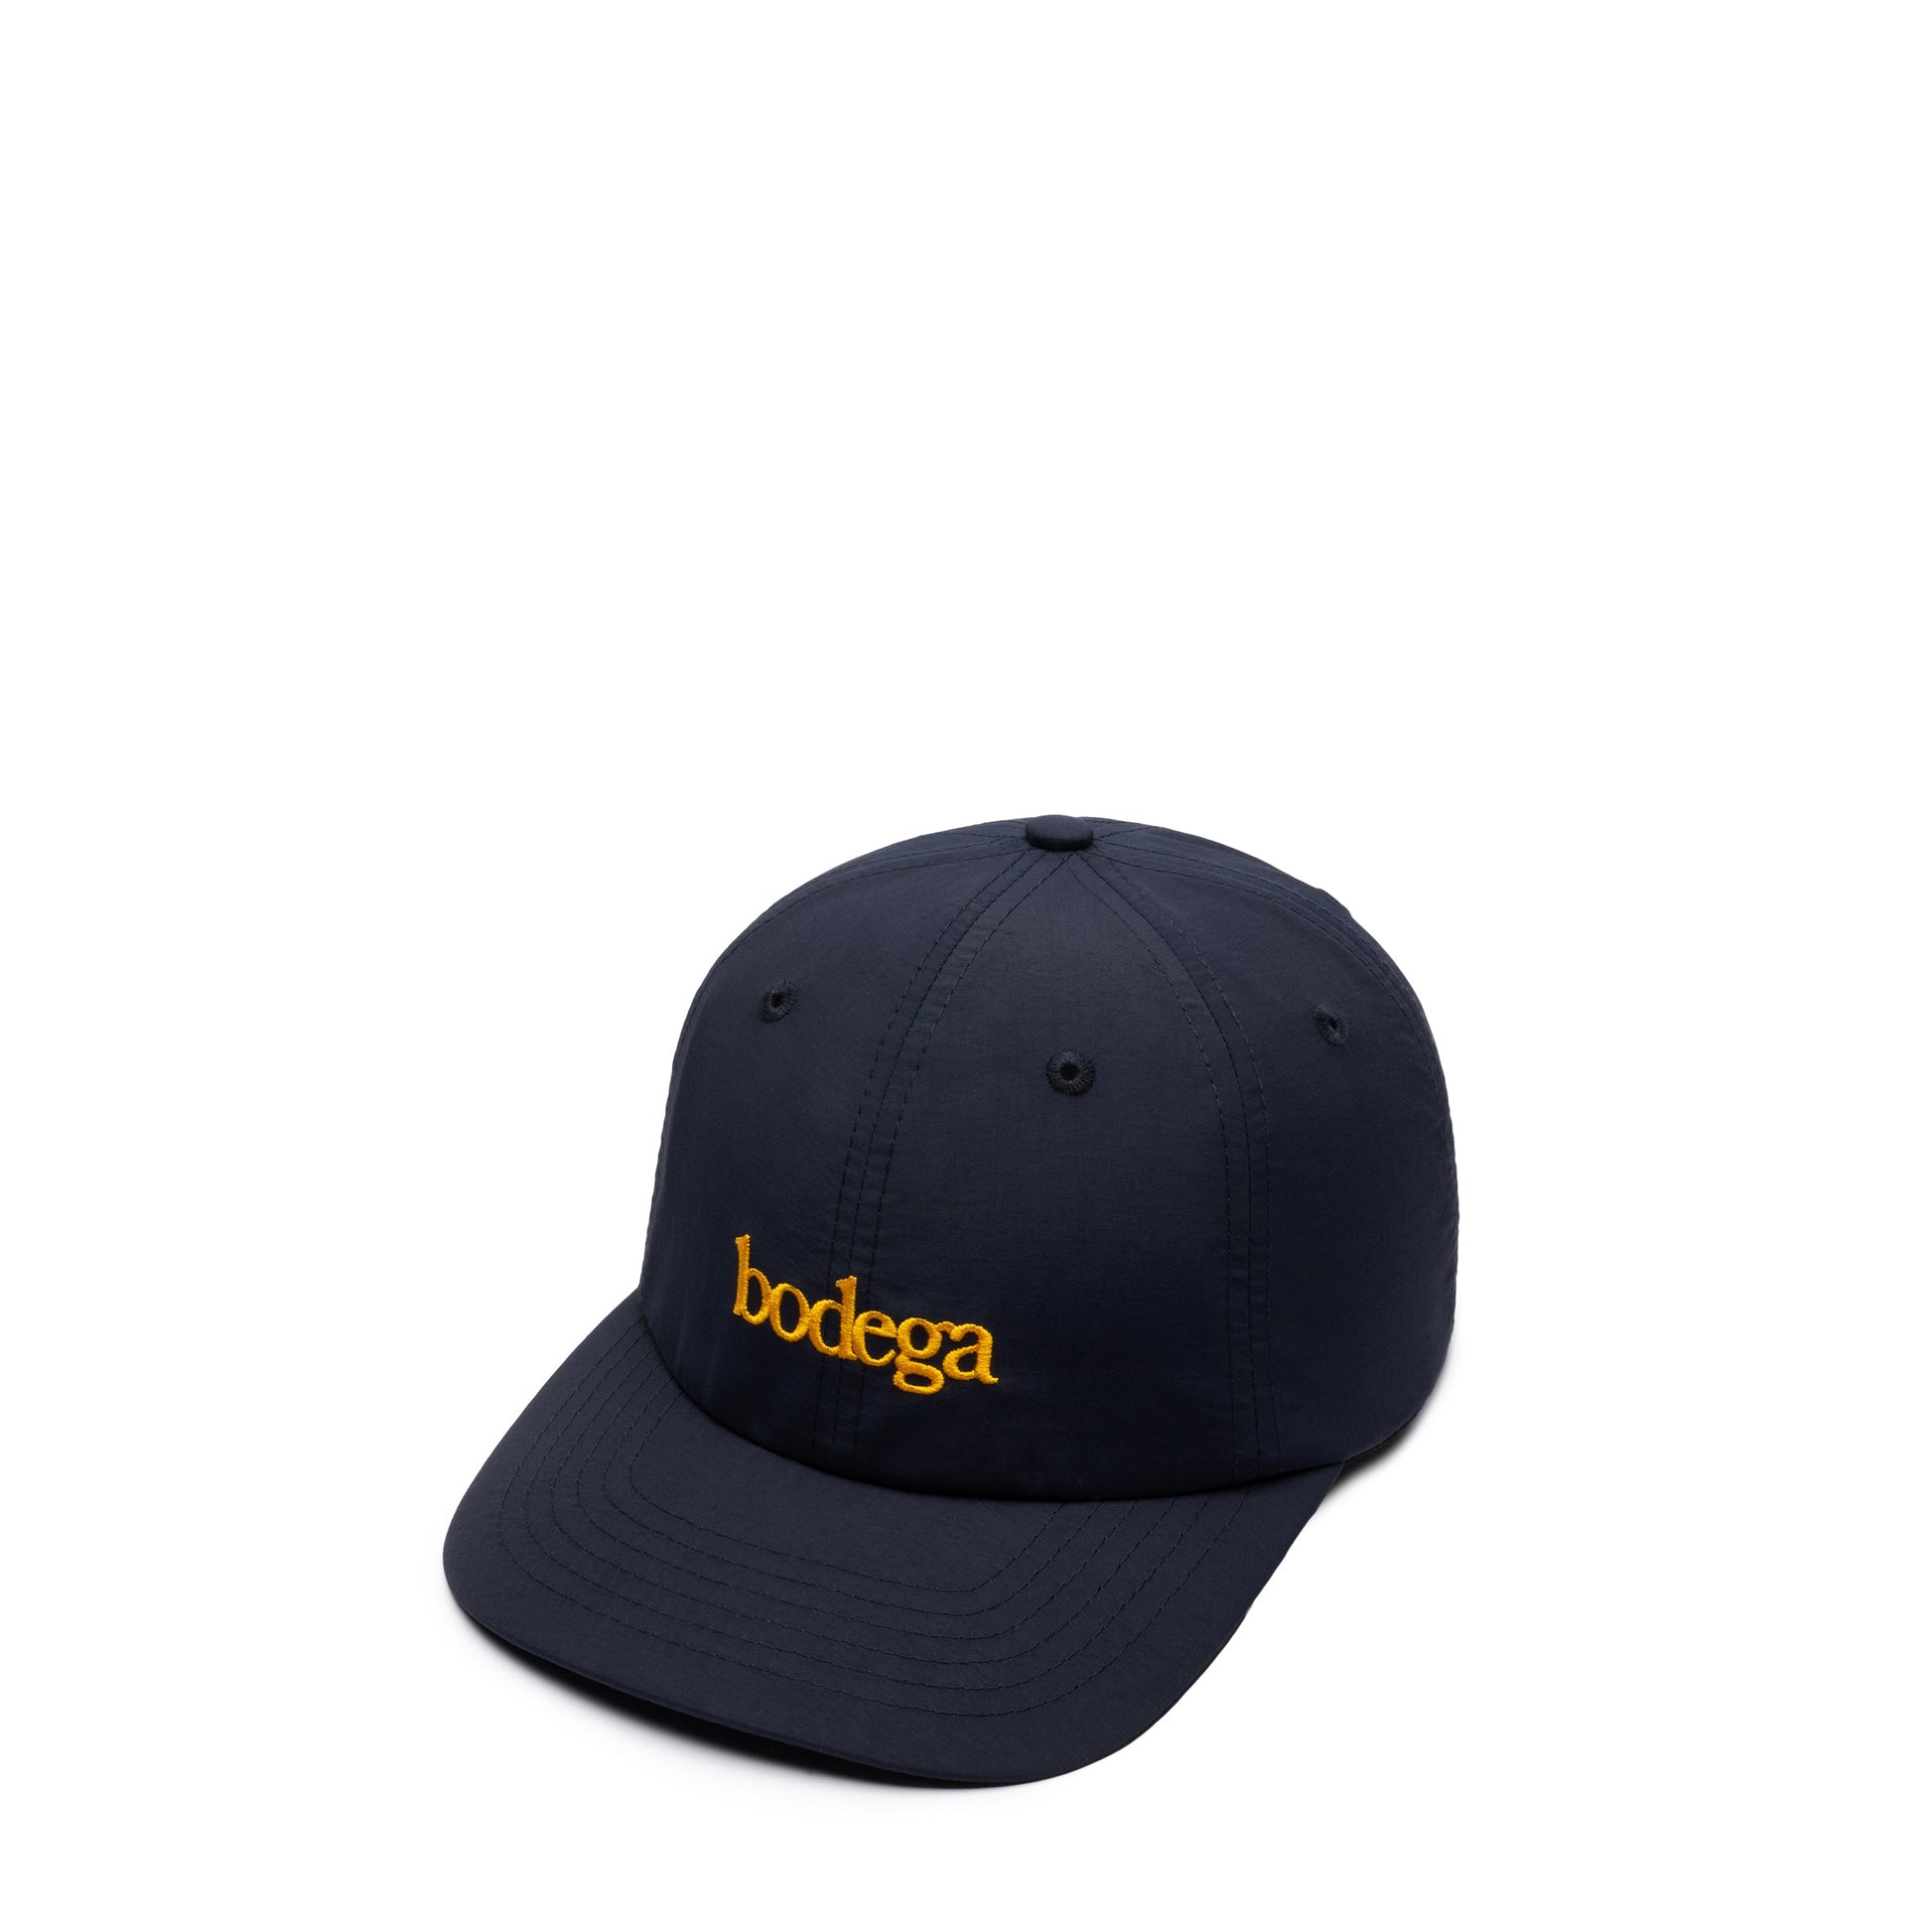 Bodega Headwear NAVY / O/S RELAXED CAP